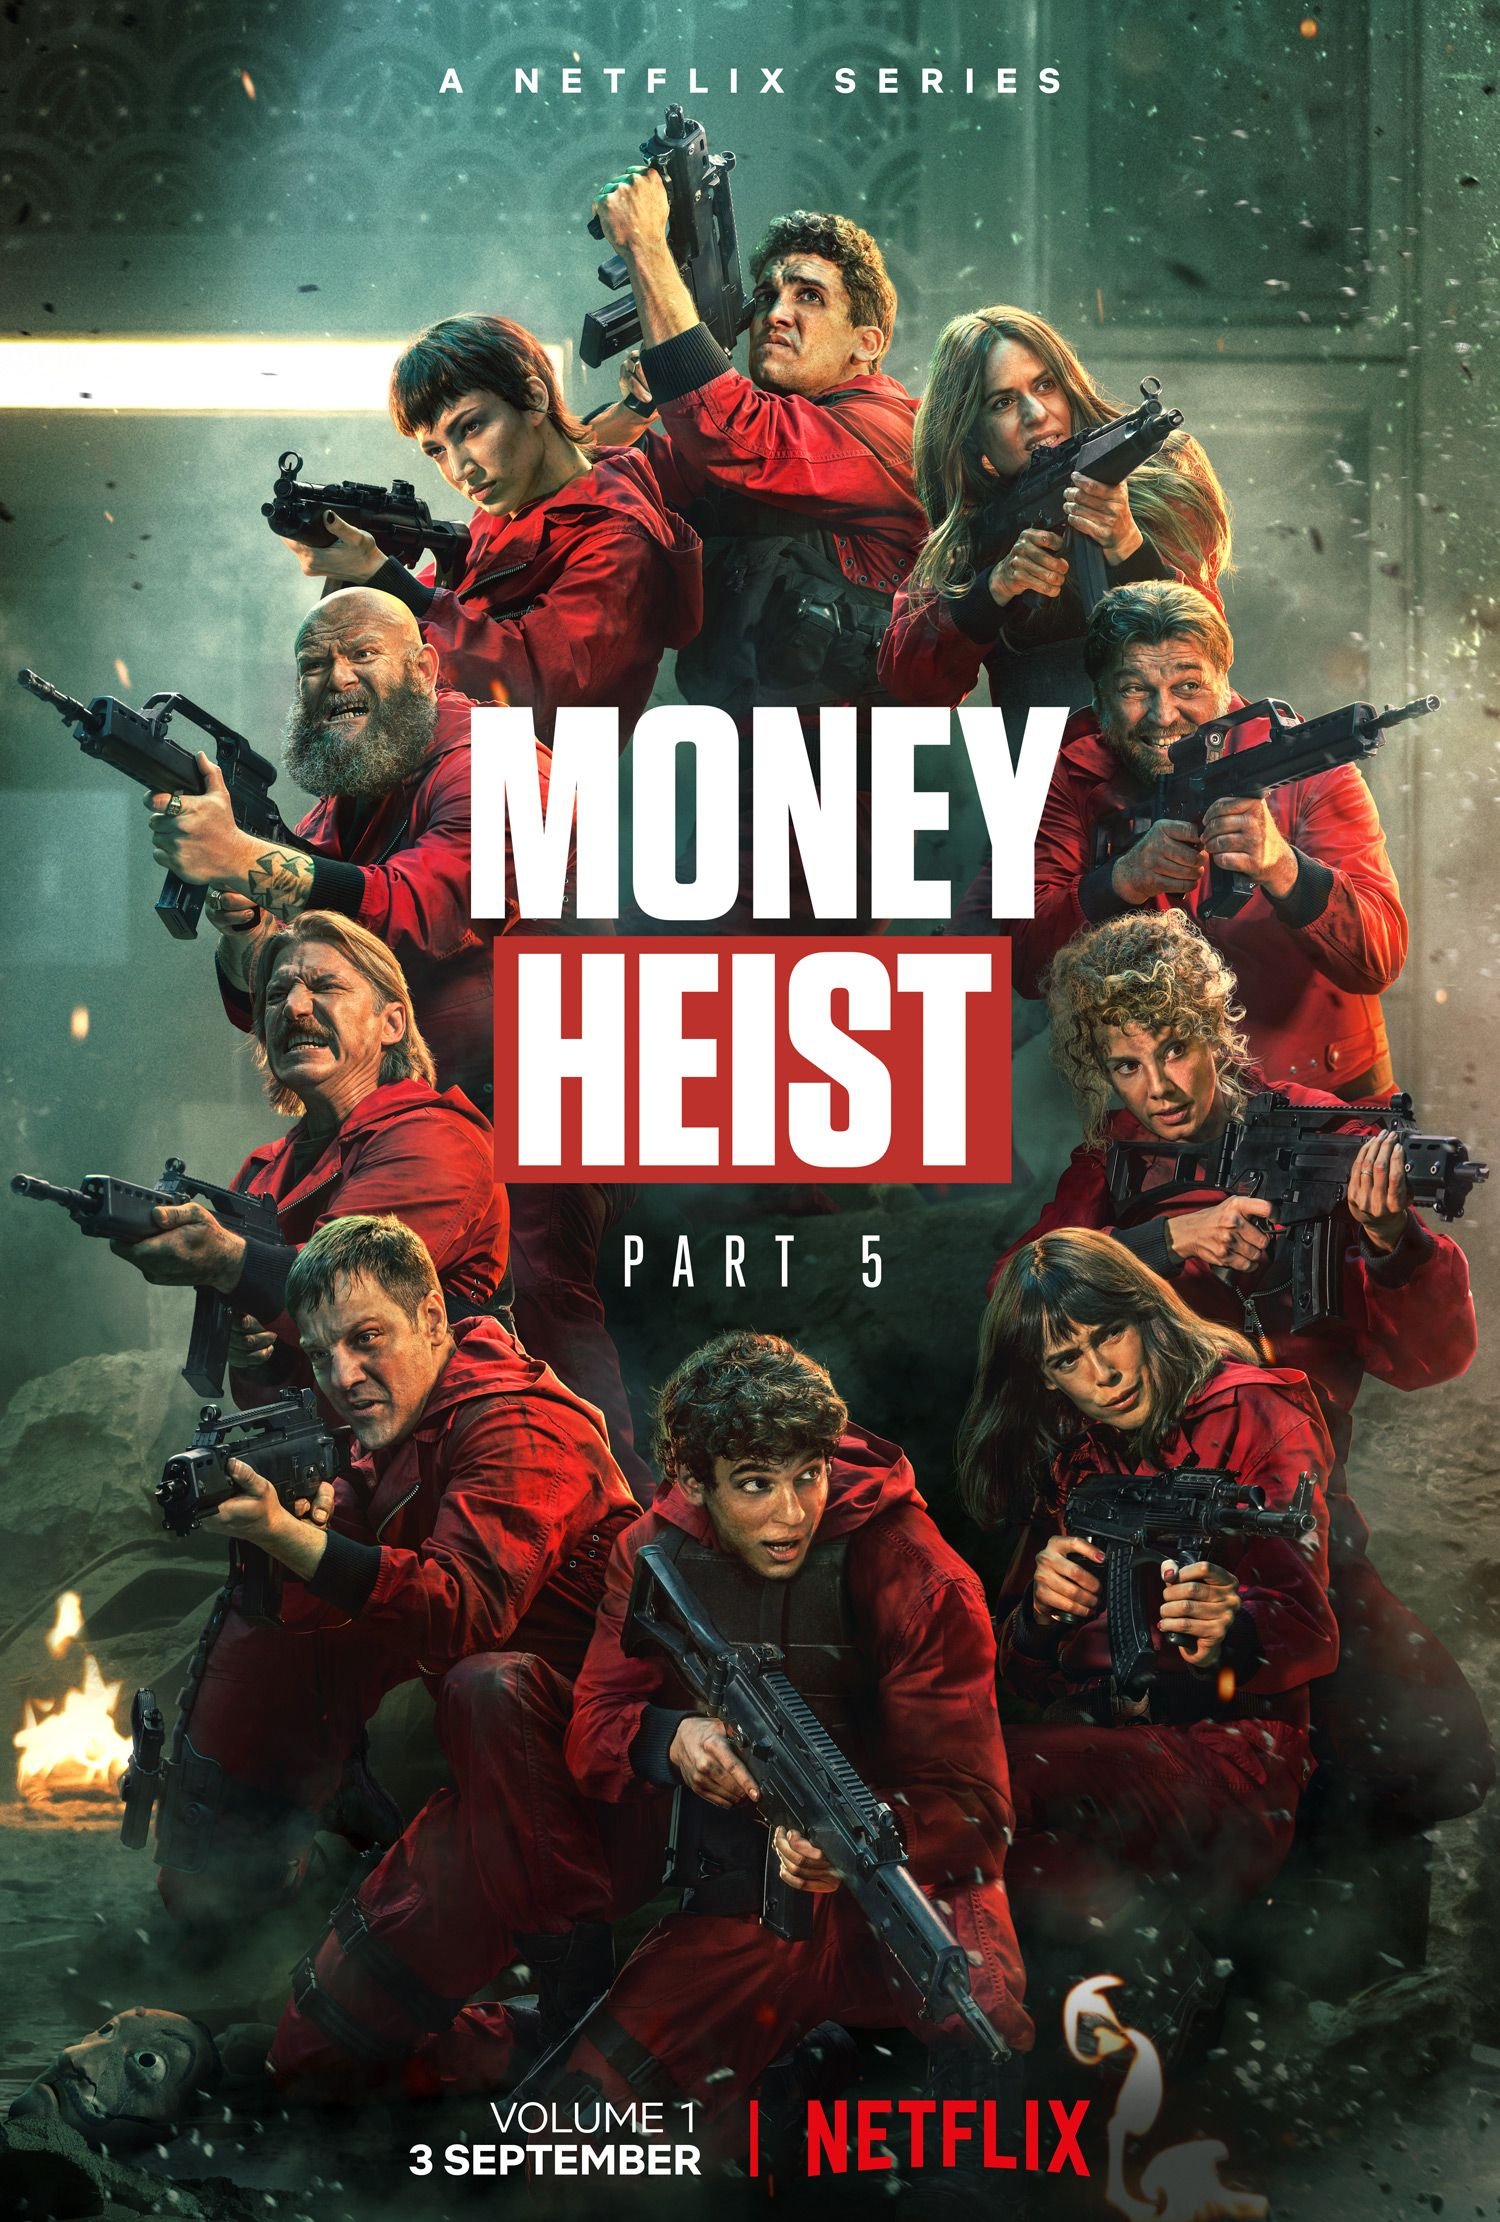 ซีรี่ย์ฝรั่ง - Money Heist Season 5 Part 1 (2021) ทรชนคนปรนโลก ซีซั่น 5 ตอนที่ 1-5 ซับไทย